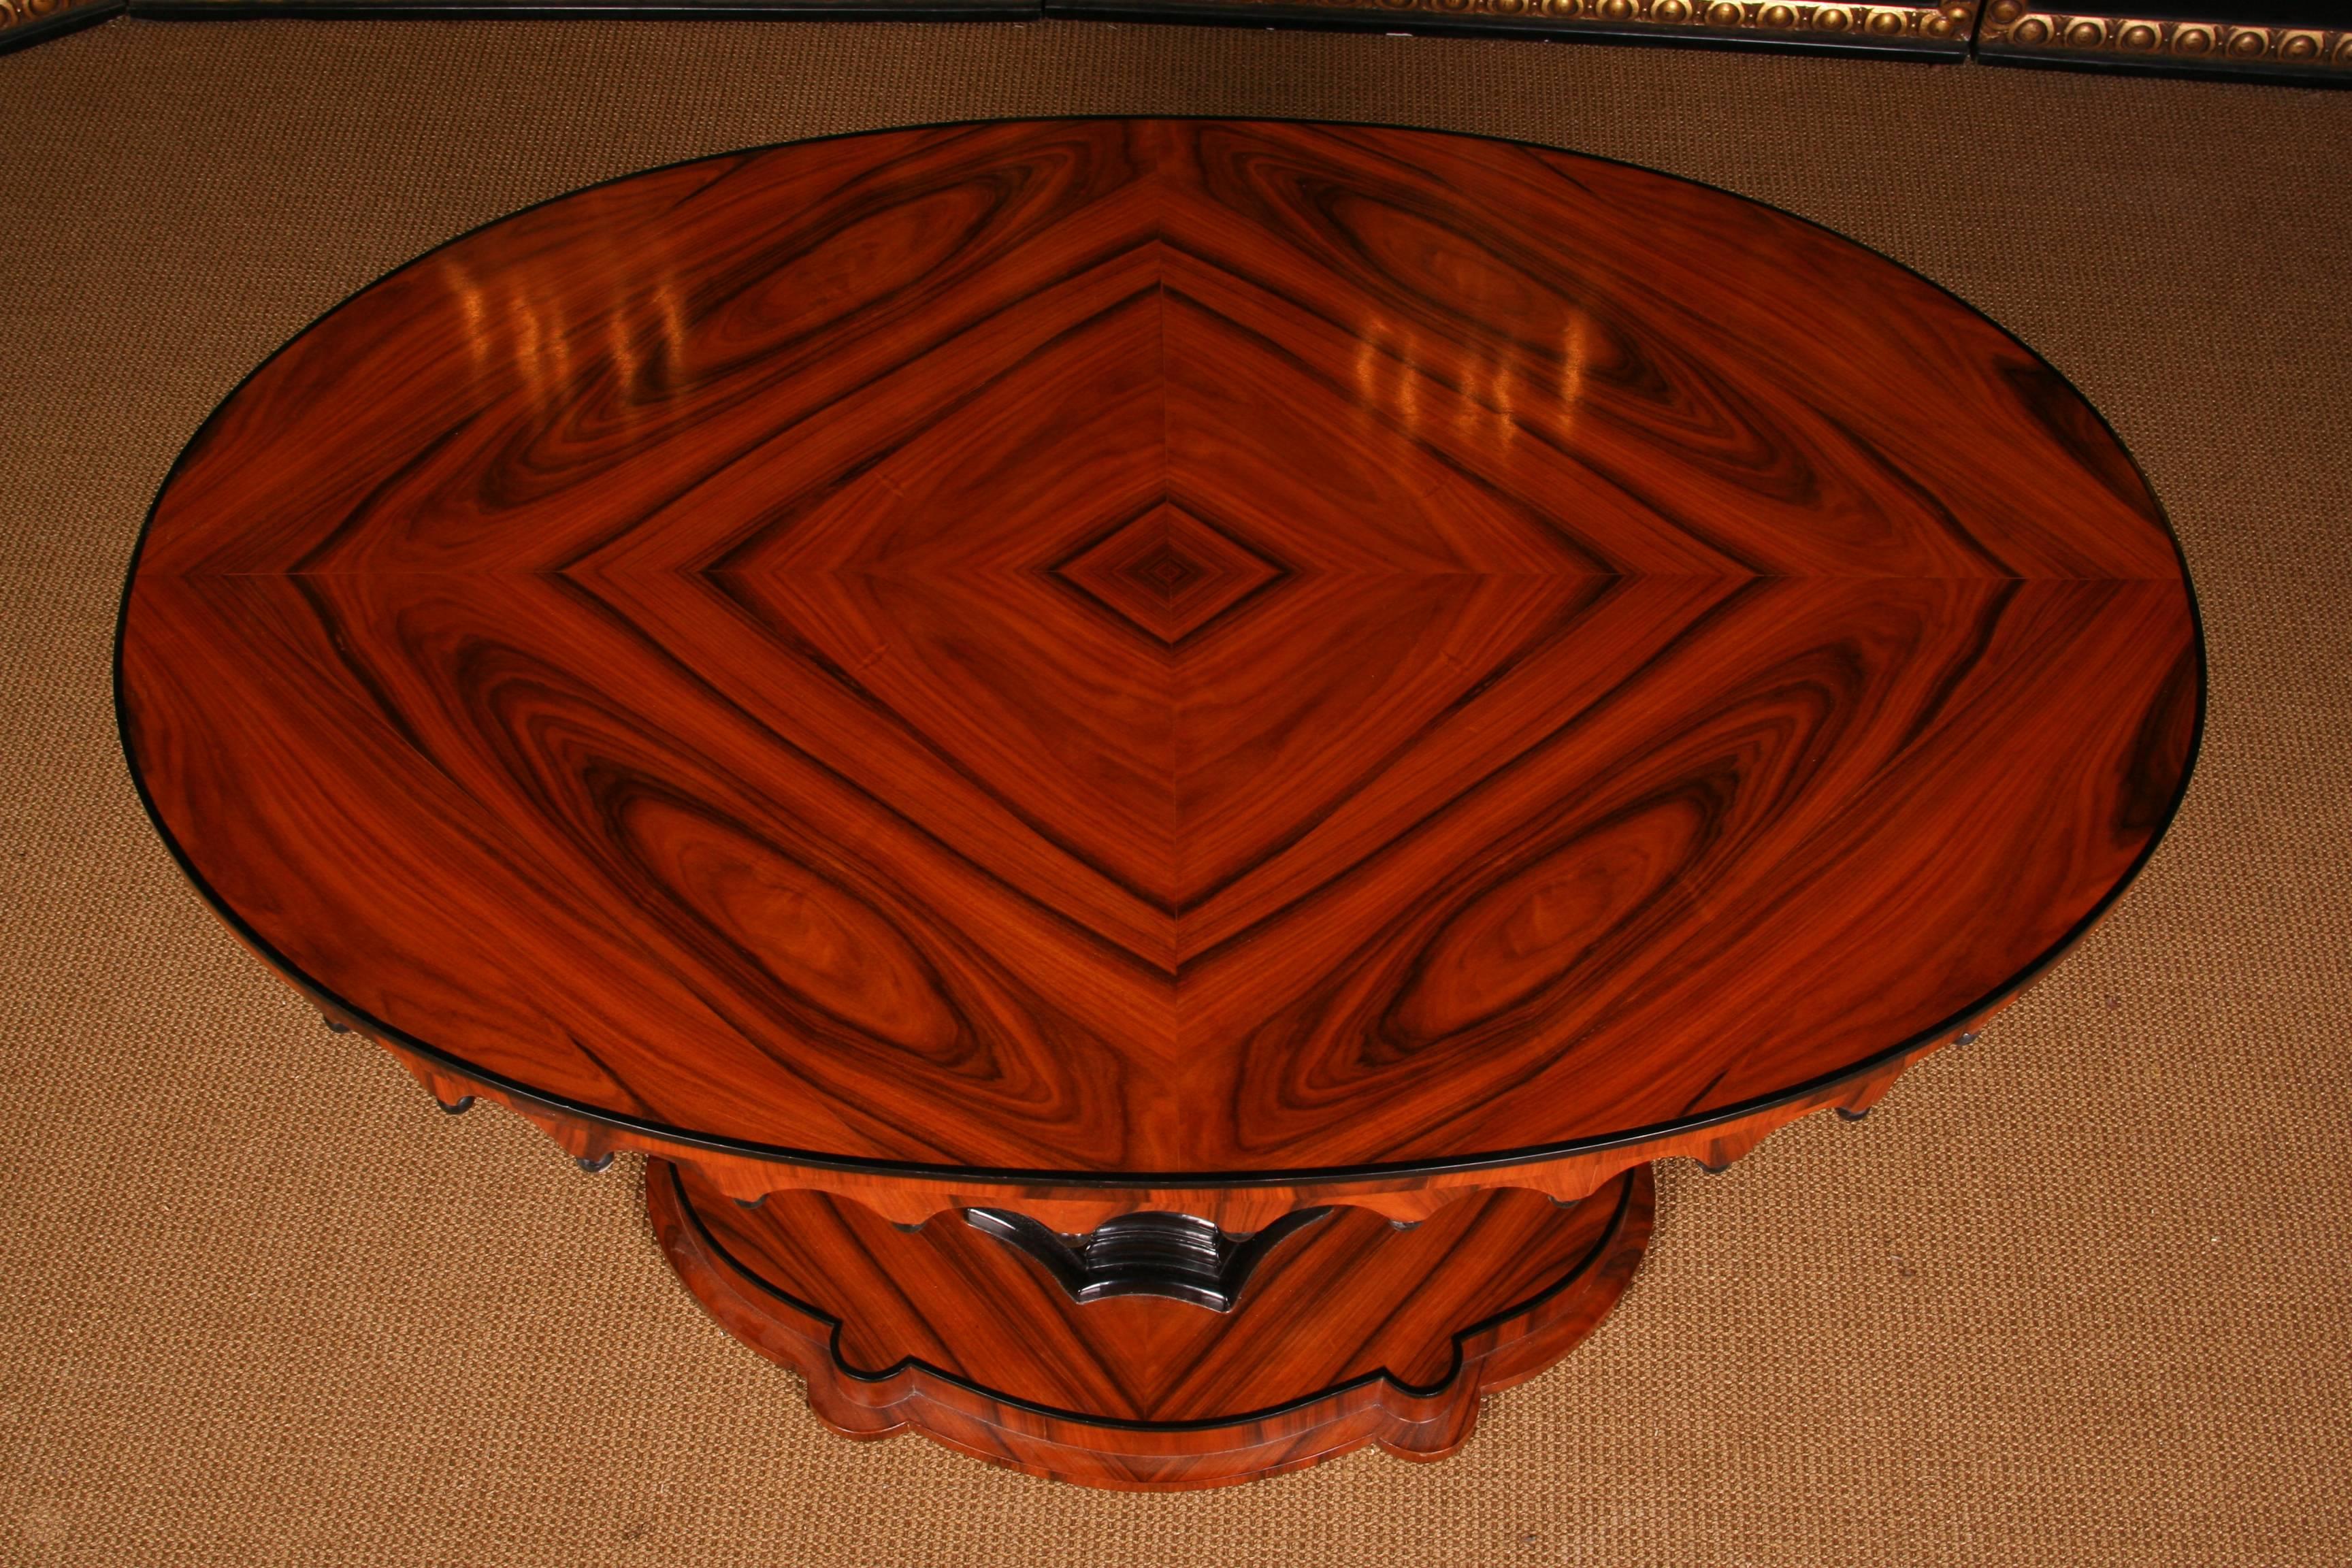 19th Century Elegant Oval Table in Biedermeier Style with exotic Rosewood Veneer 3